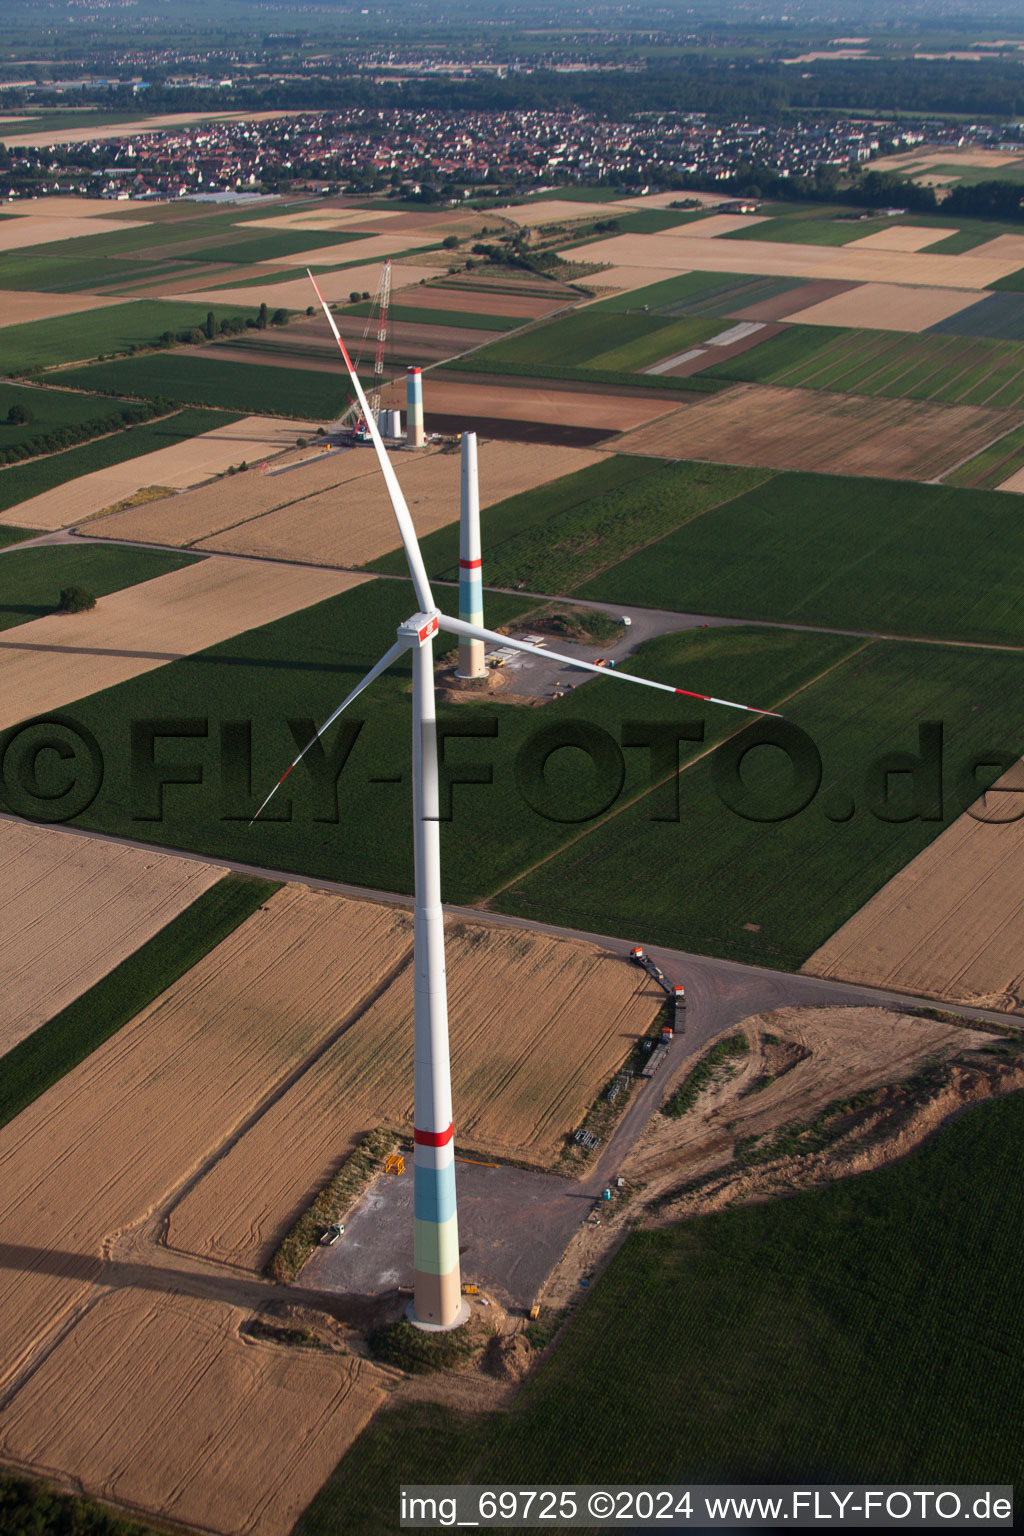 Windparkbau in Offenbach an der Queich im Bundesland Rheinland-Pfalz, Deutschland aus der Vogelperspektive